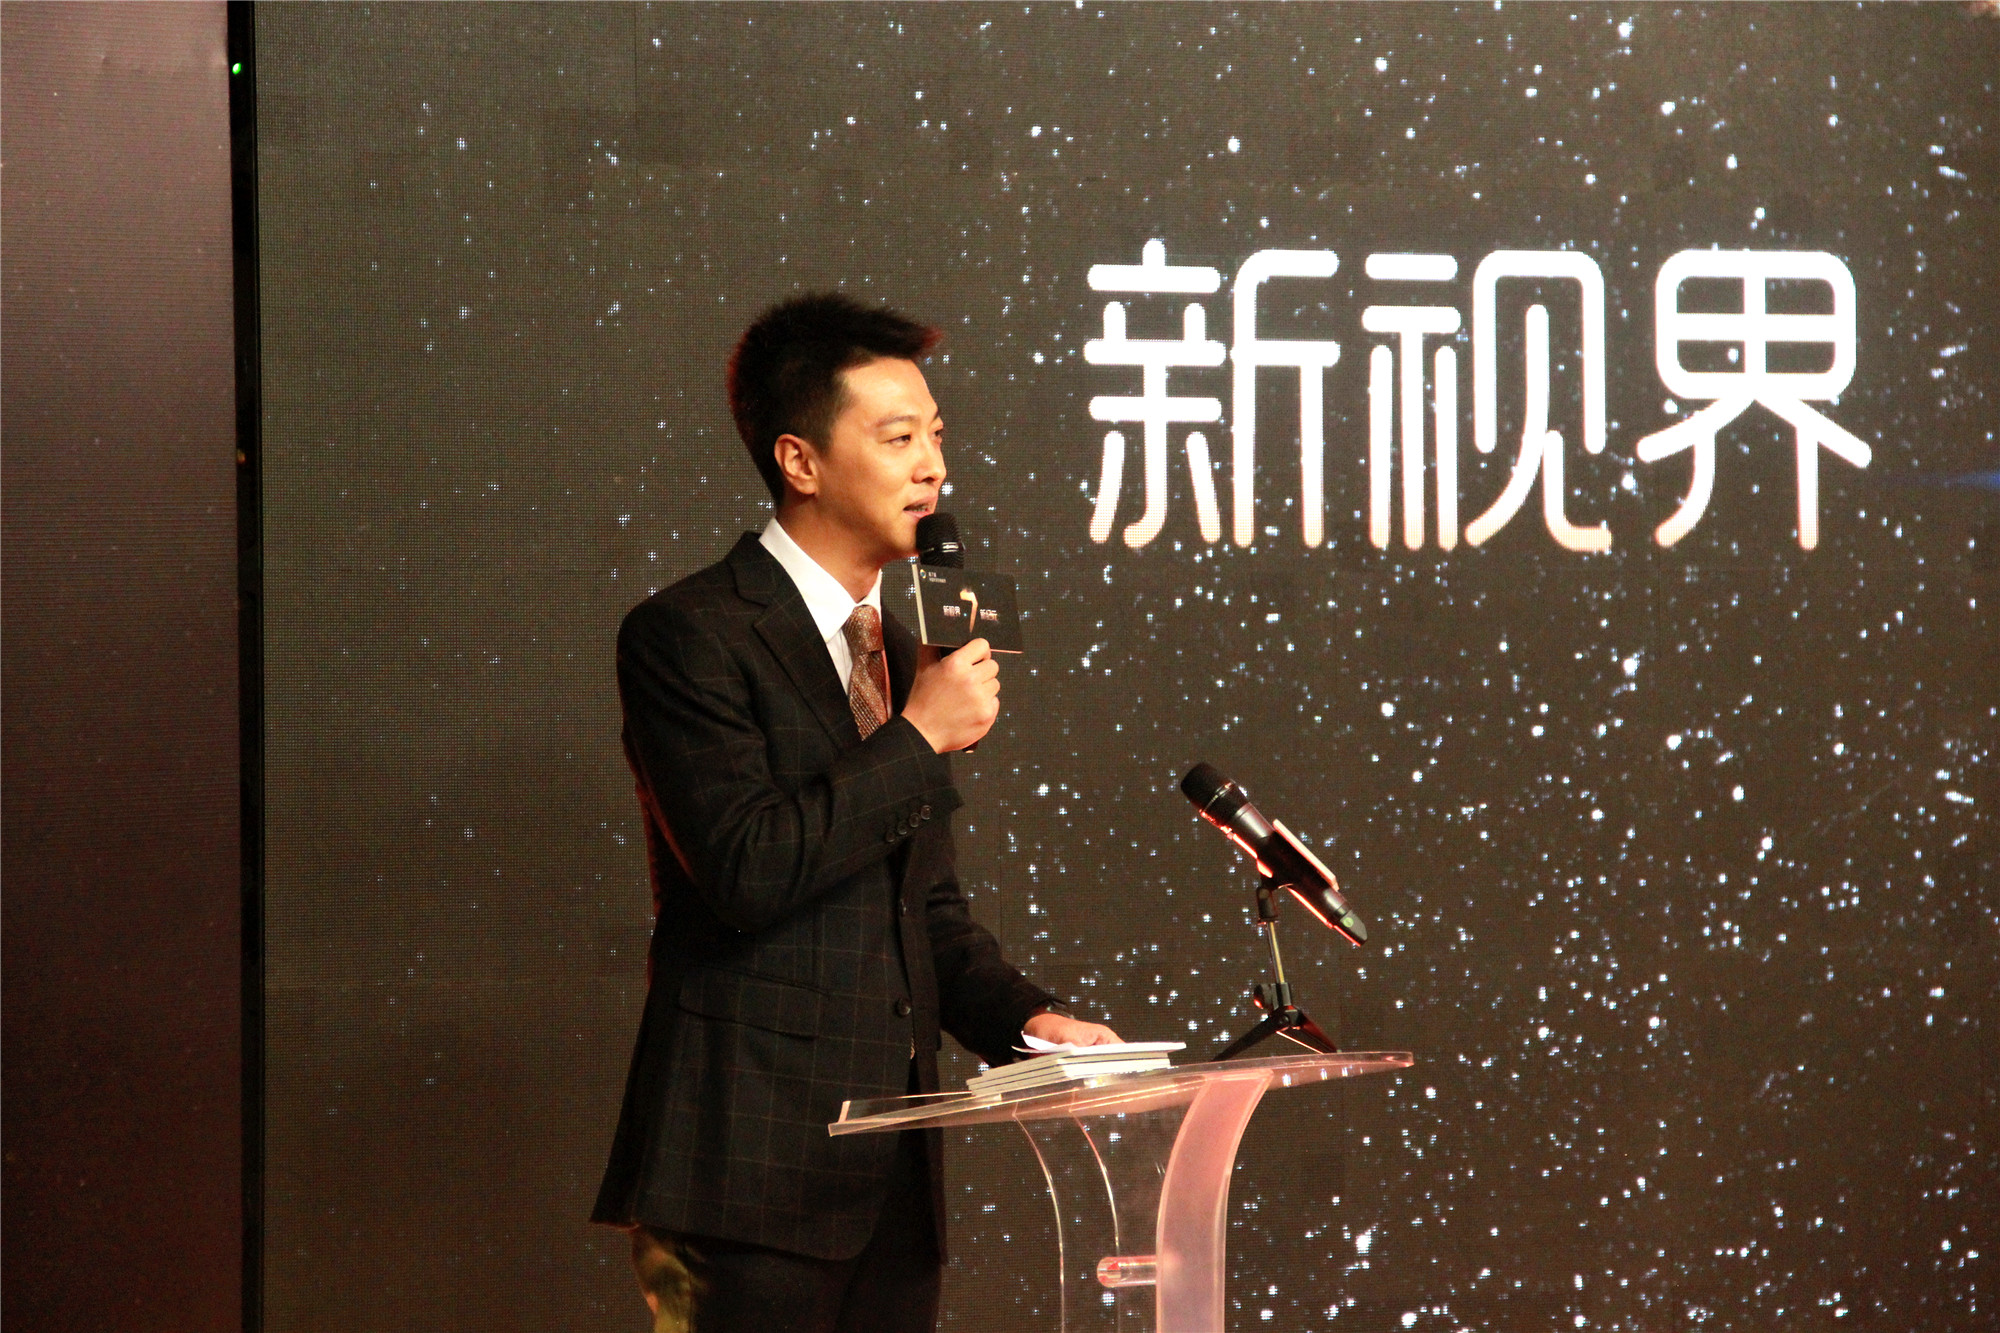 第七届中国大学生电视节启动 六大活动展开